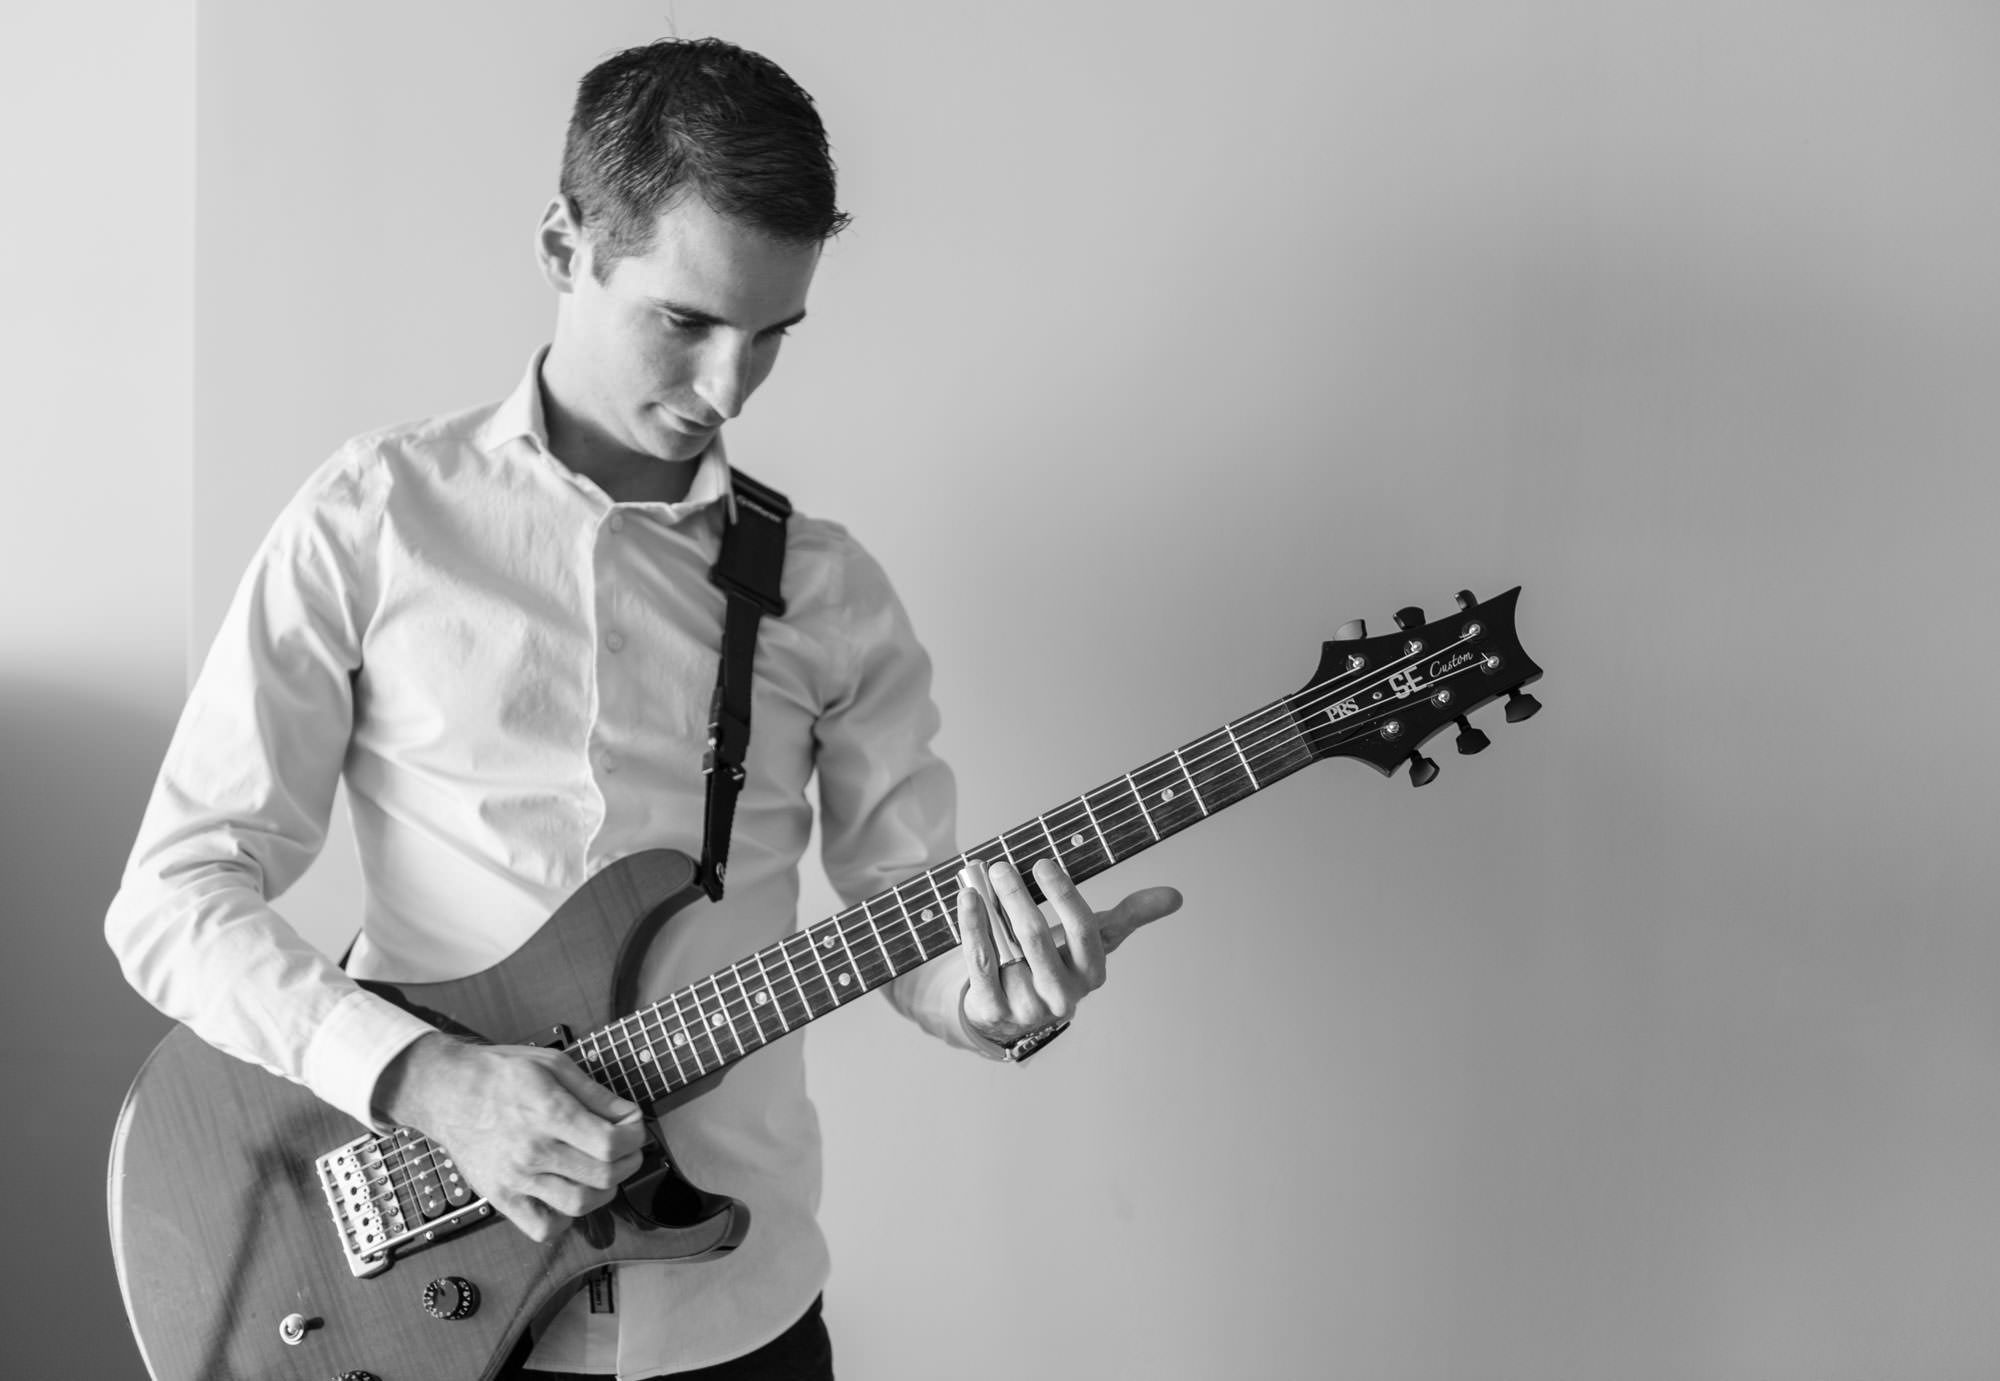 Nick Grinlinton plays guitar